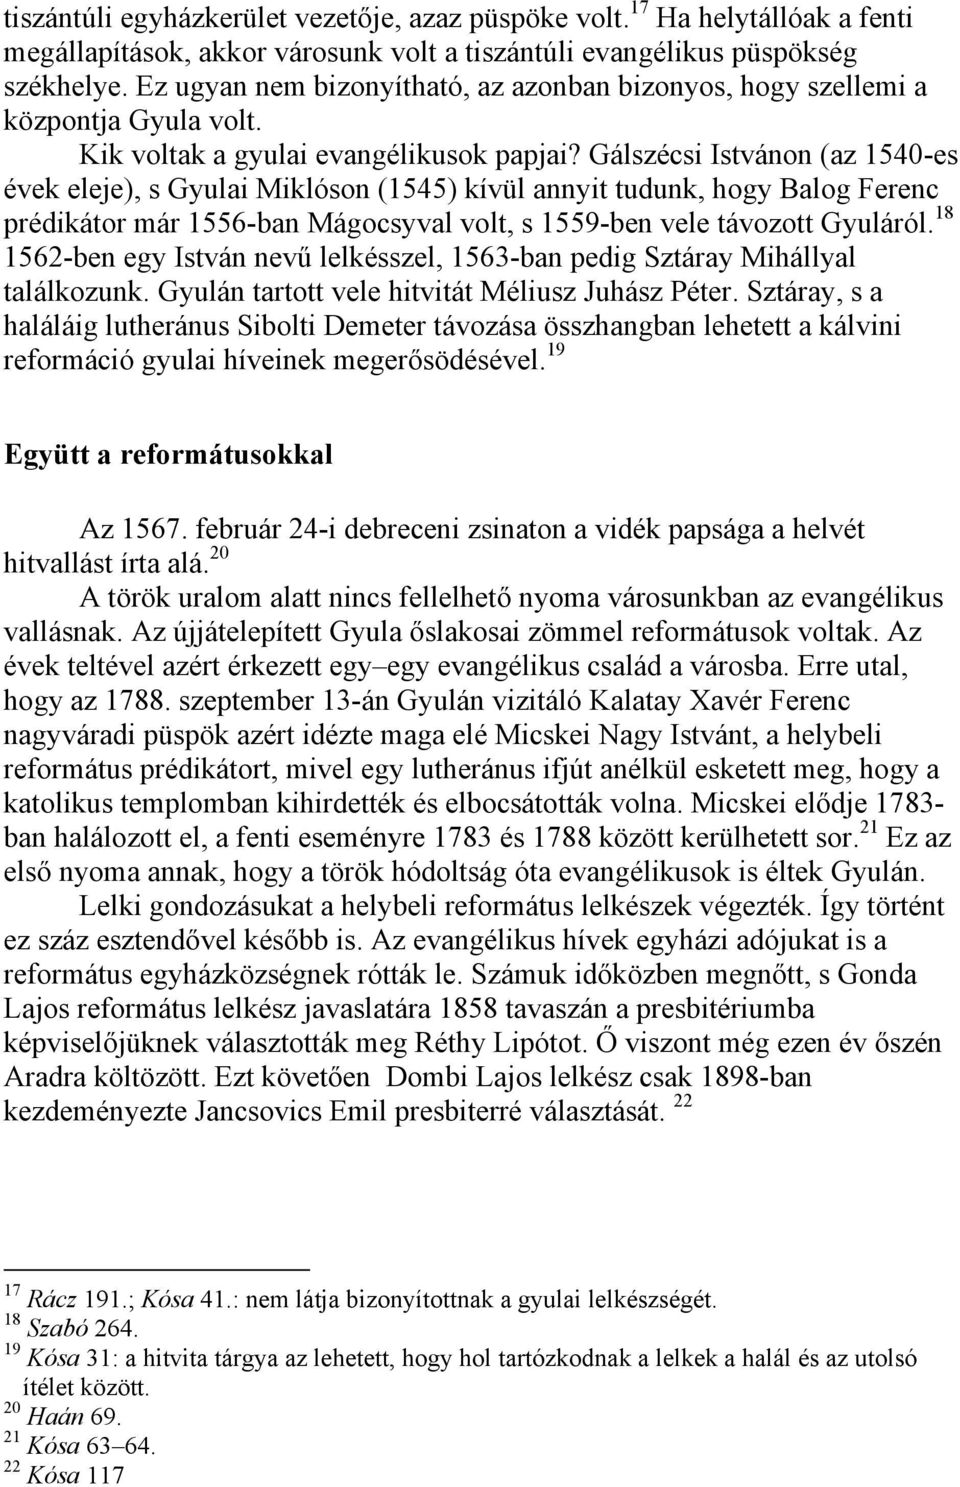 Gálszécsi Istvánon (az 1540-es évek eleje), s Gyulai Miklóson (1545) kívül annyit tudunk, hogy Balog Ferenc prédikátor már 1556-ban Mágocsyval volt, s 1559-ben vele távozott Gyuláról.